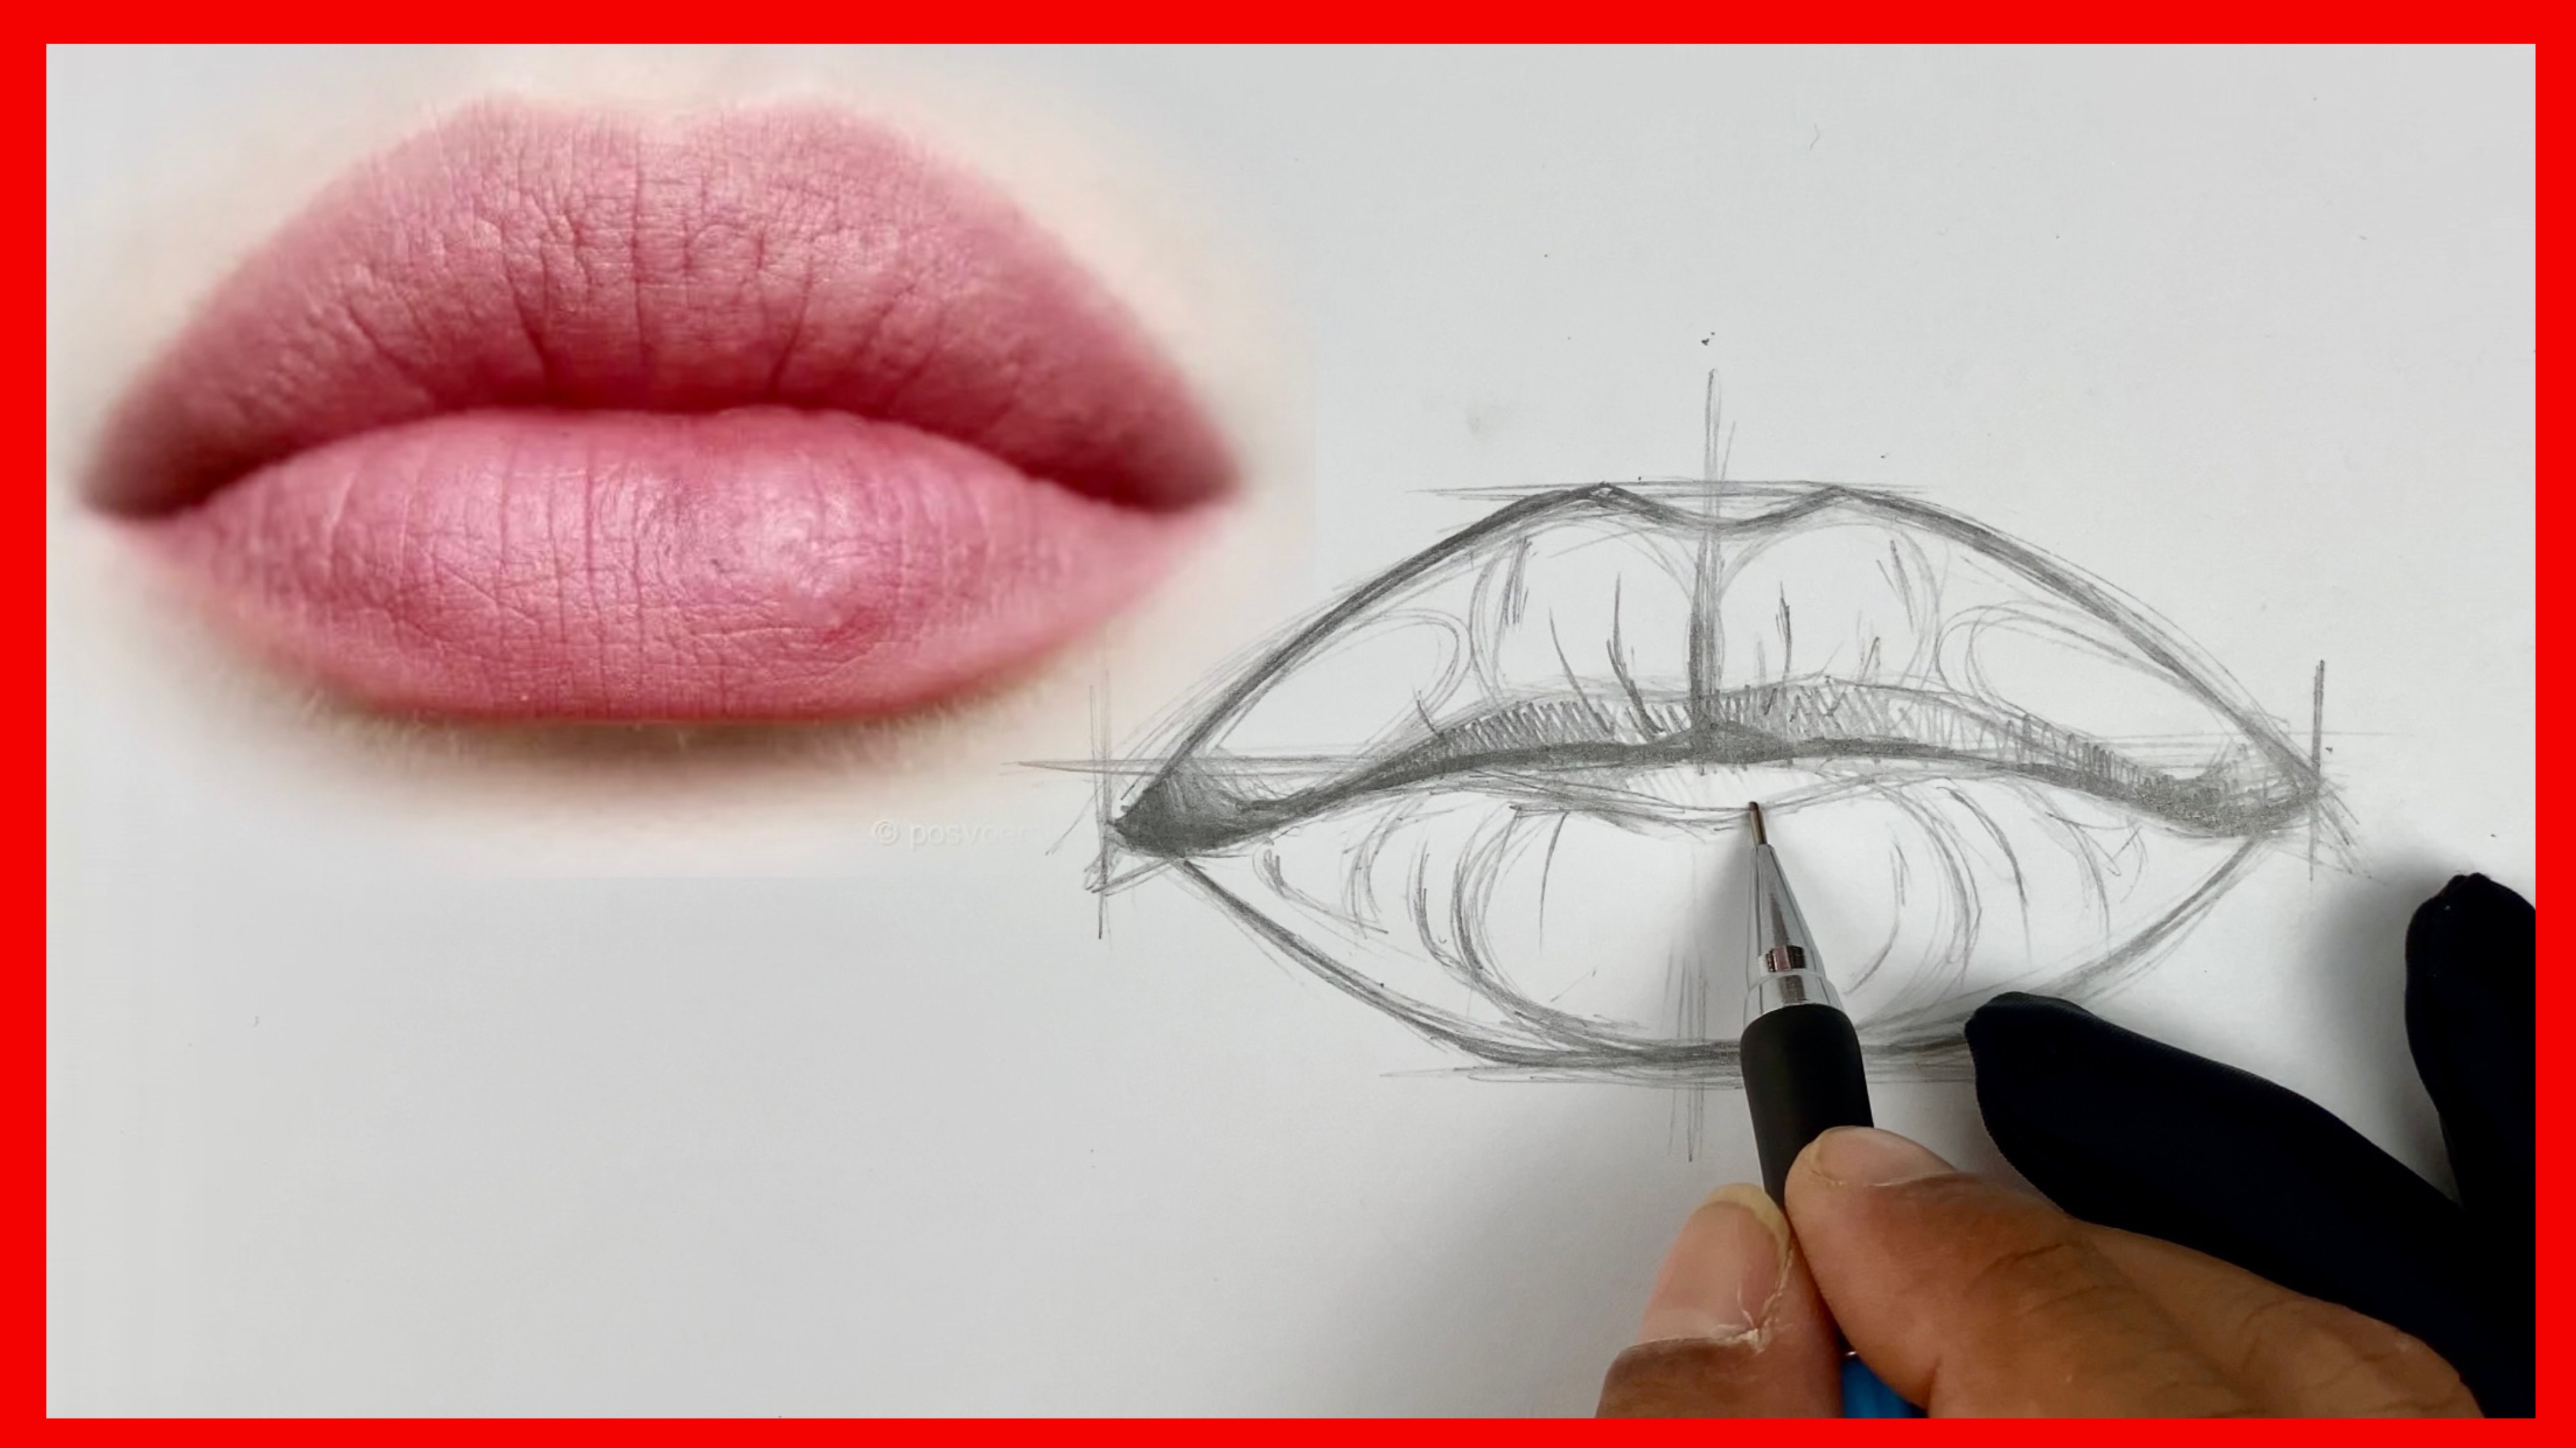 За 5 минут я научу вас правильно структурировать и рисовать губы